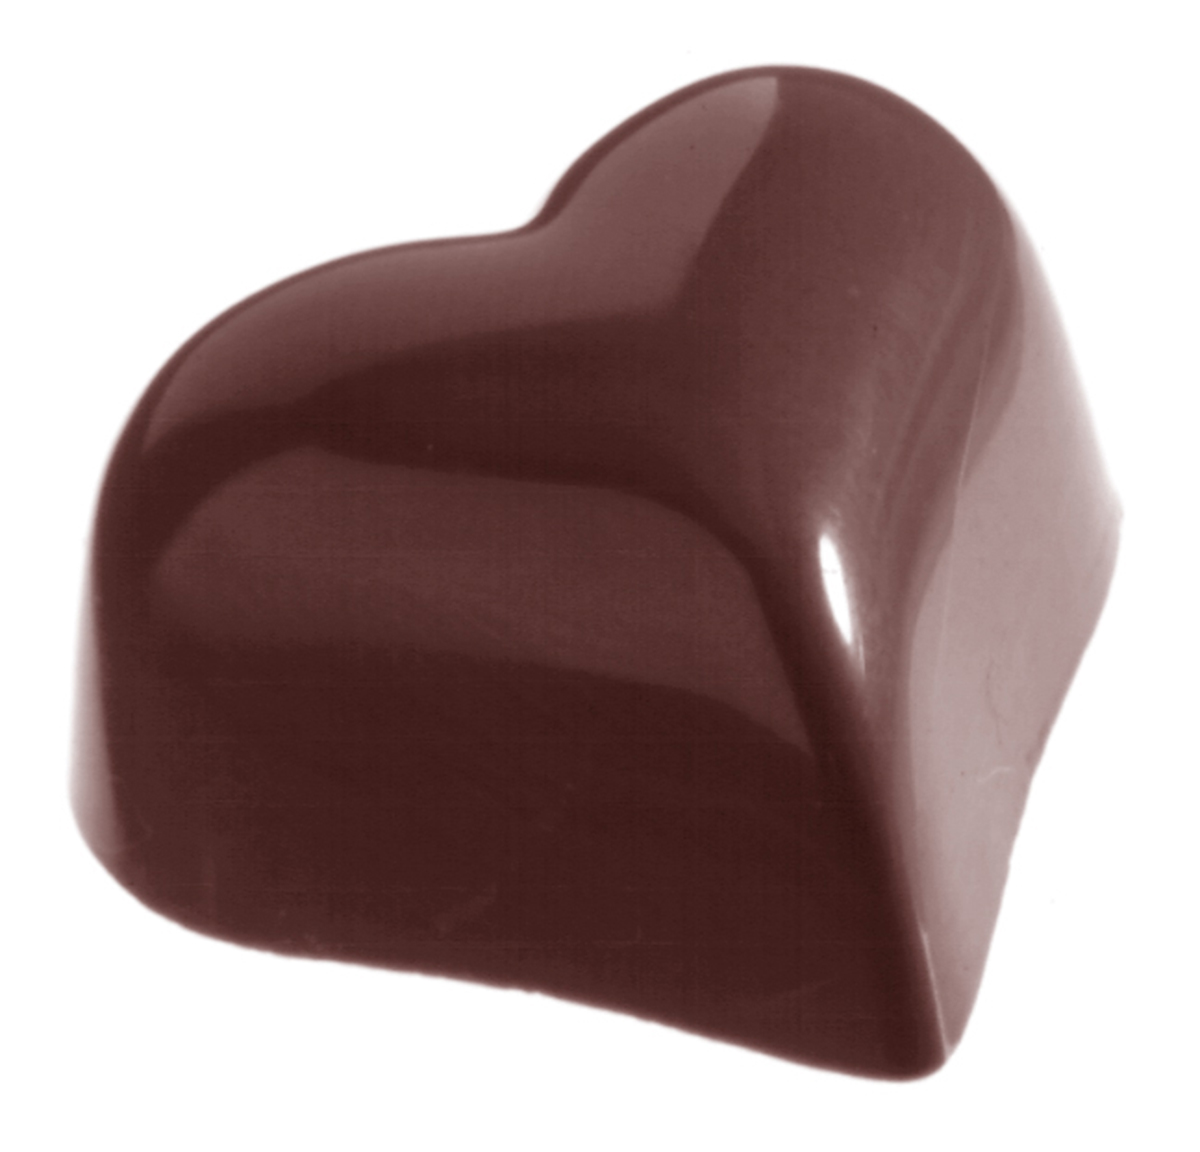 Professionel chokoladeform i polycarbonat - Small puffy heart 9 g CW1526